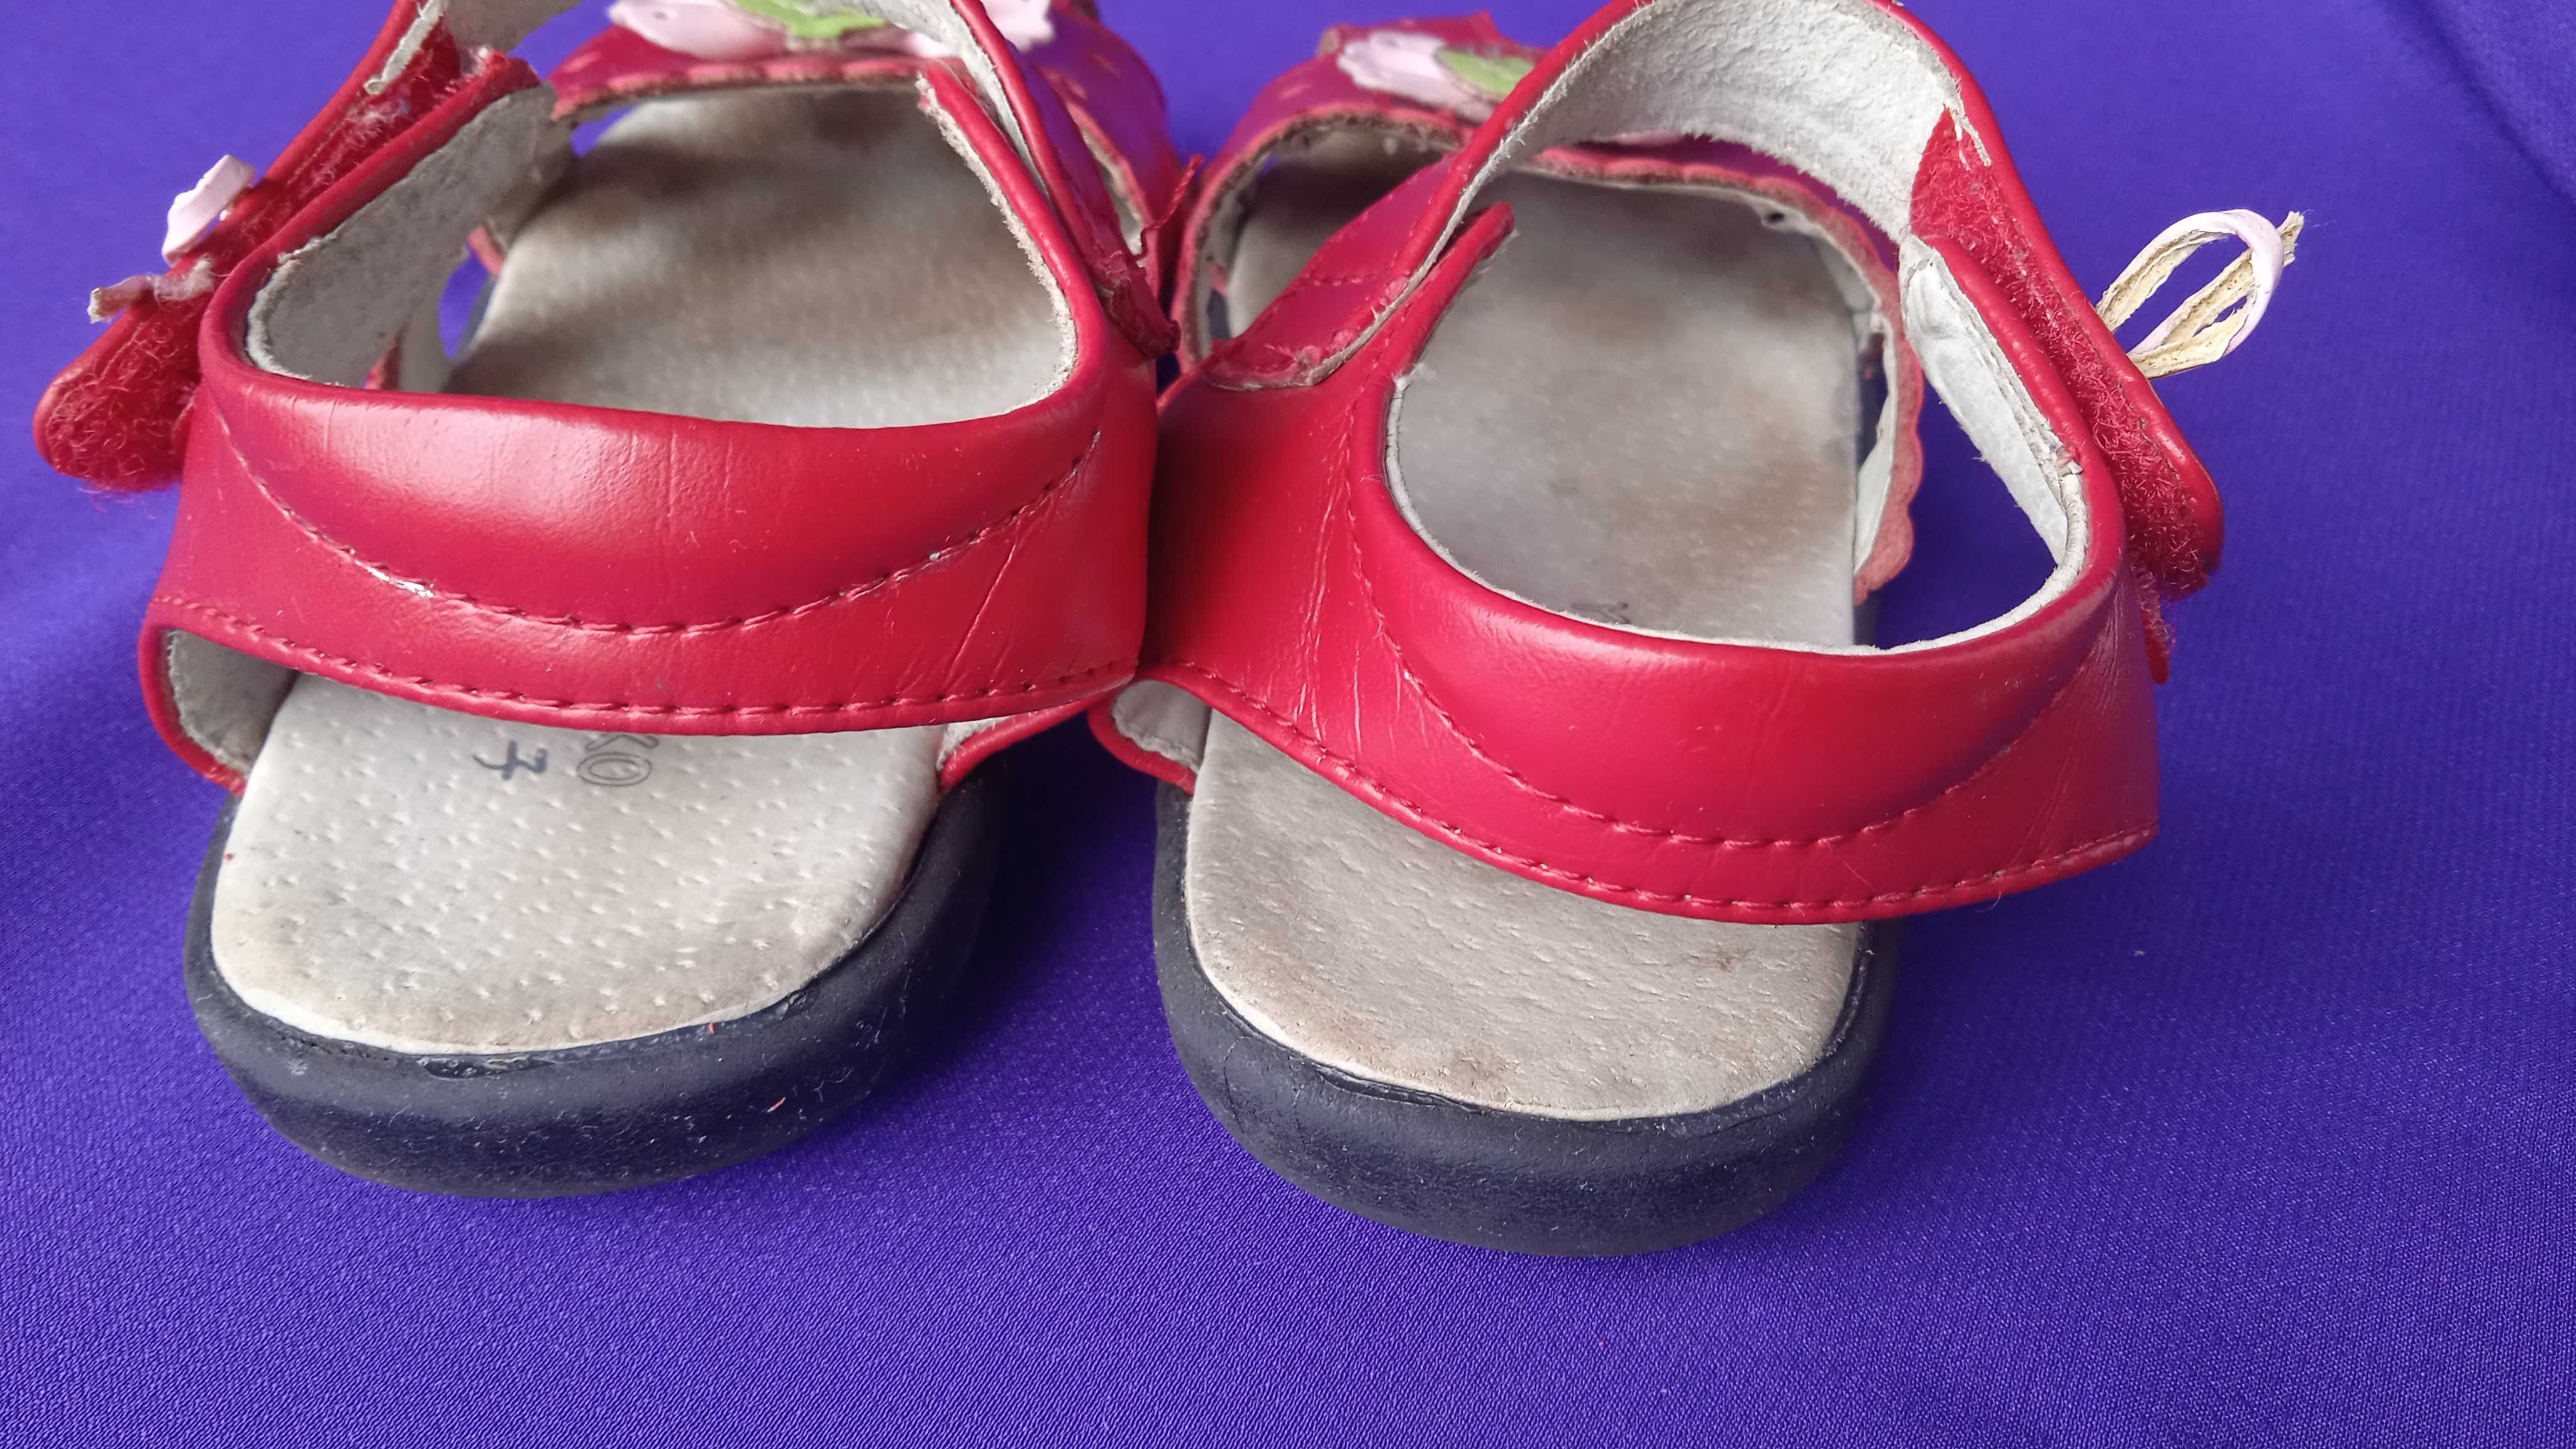 Кожаные босоножки сандалии YOKAWAKO, вишнёвые, клубника, 19 размер.